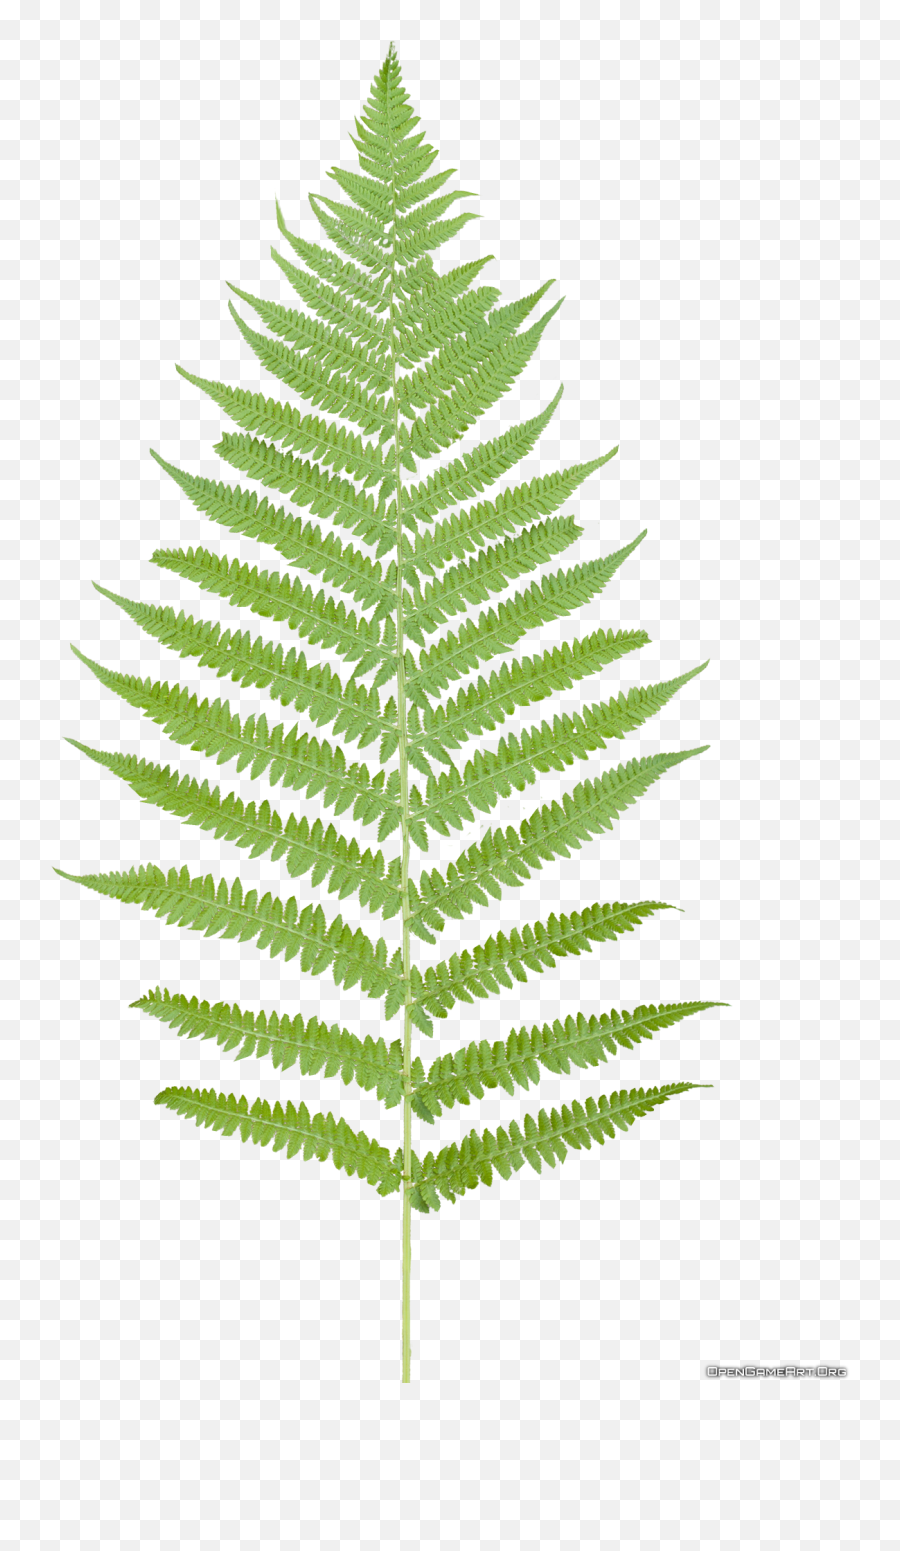 Transparent Fern Plant Leaves - Transparent Background Fern Png,Fern Png